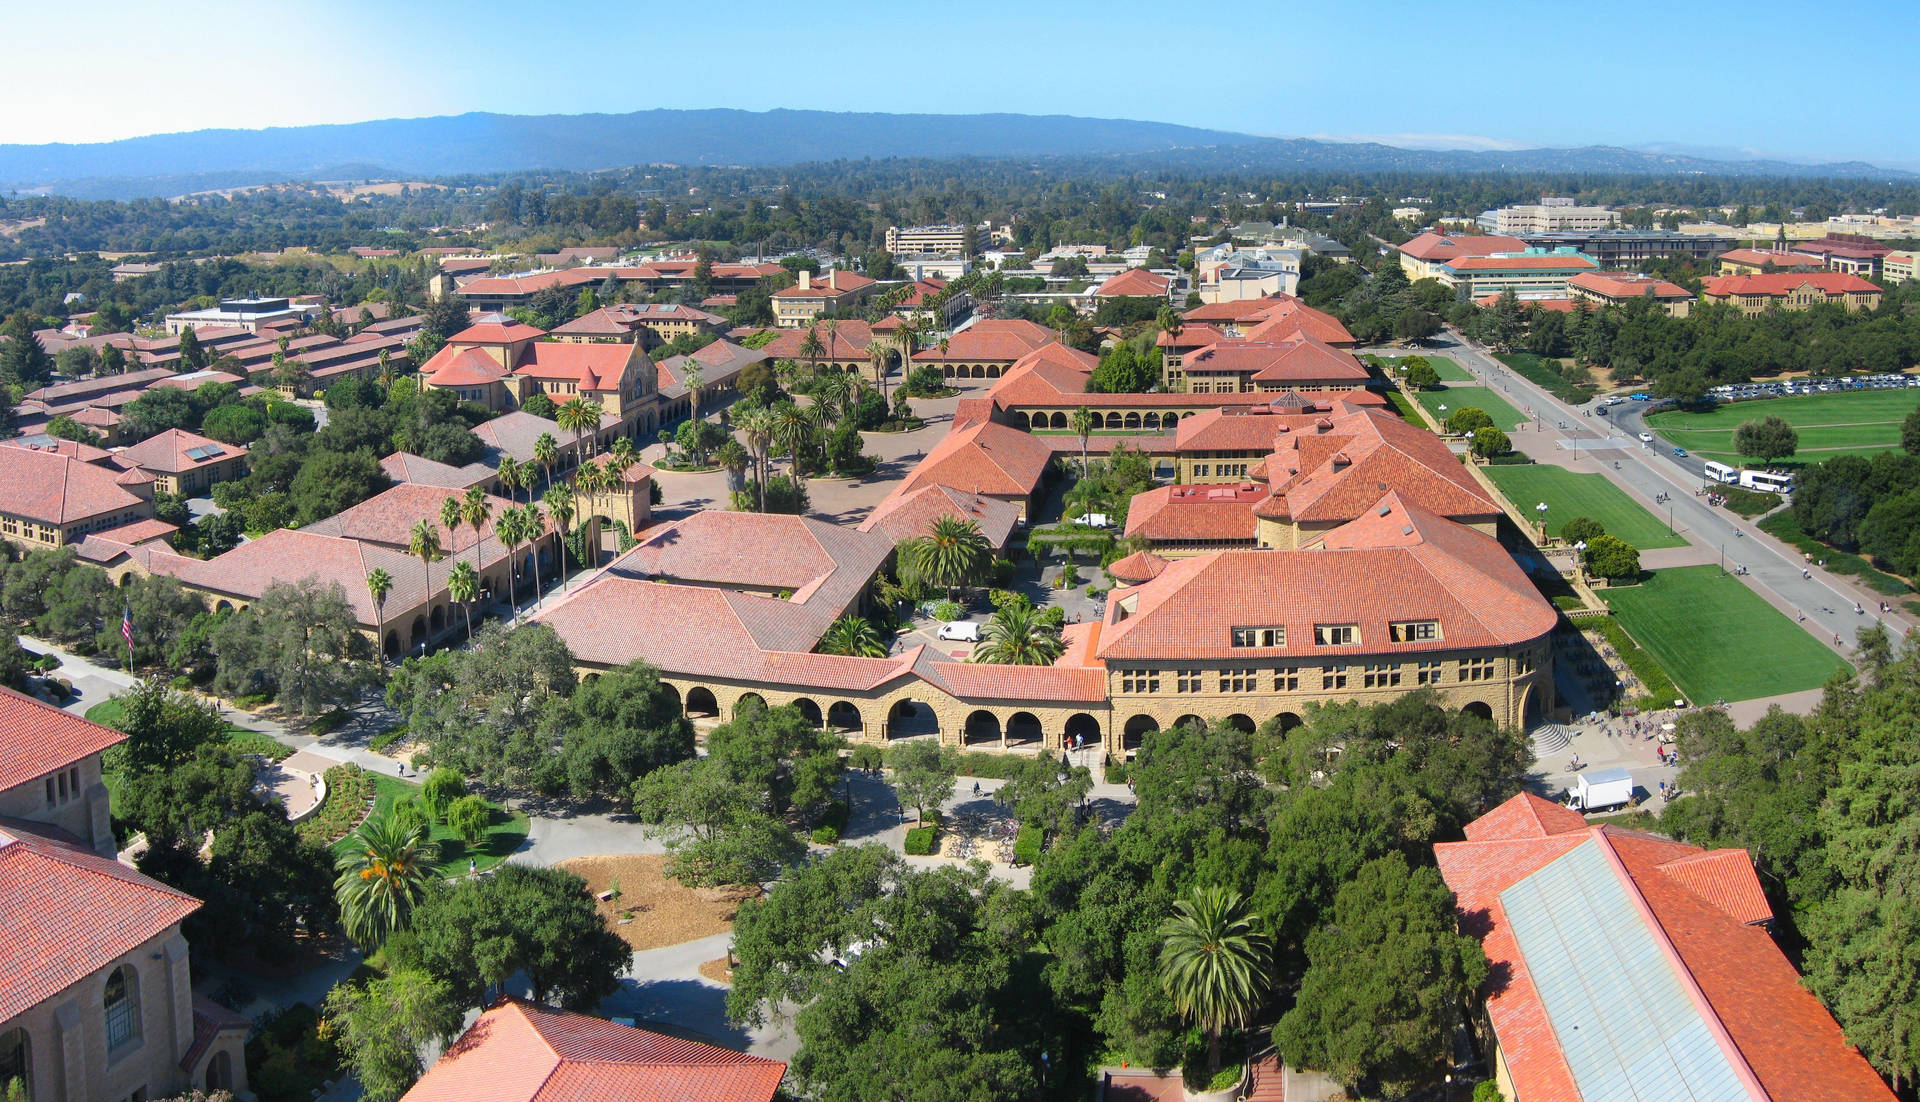 Campusda Universidade De Stanford Vista Aérea. Papel de Parede